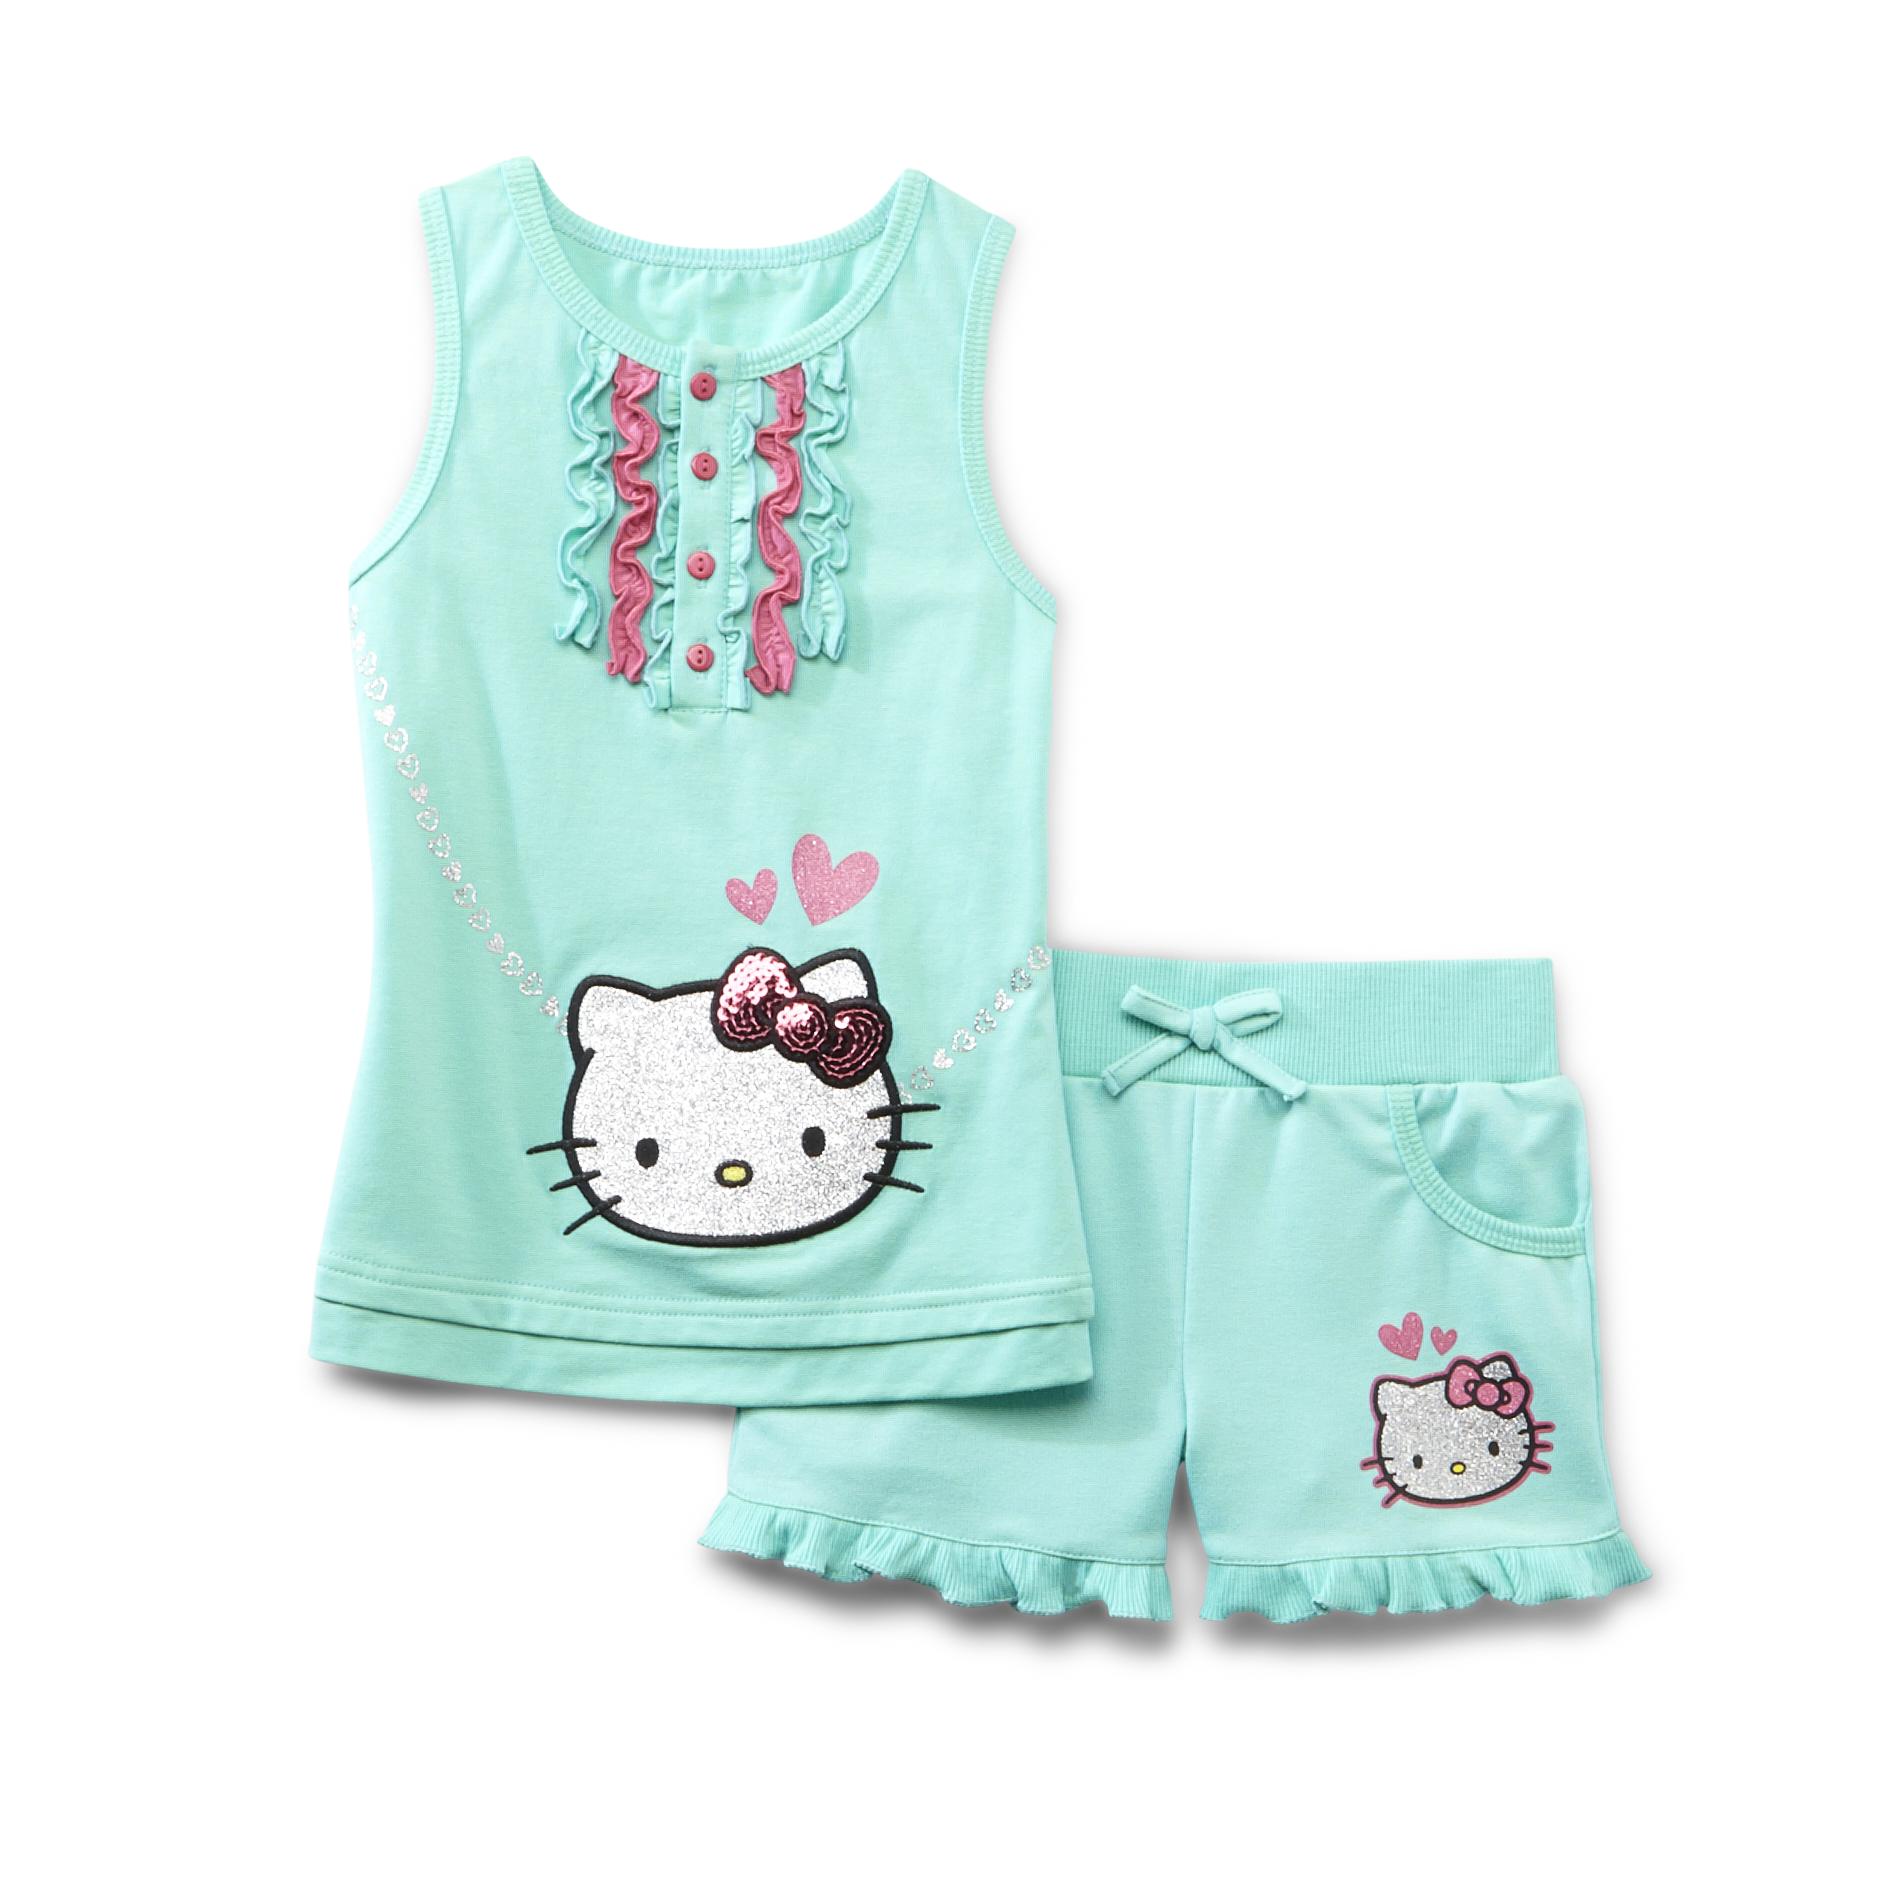 Hello Kitty Girl's Sleeveless Ruffle Top & Shorts